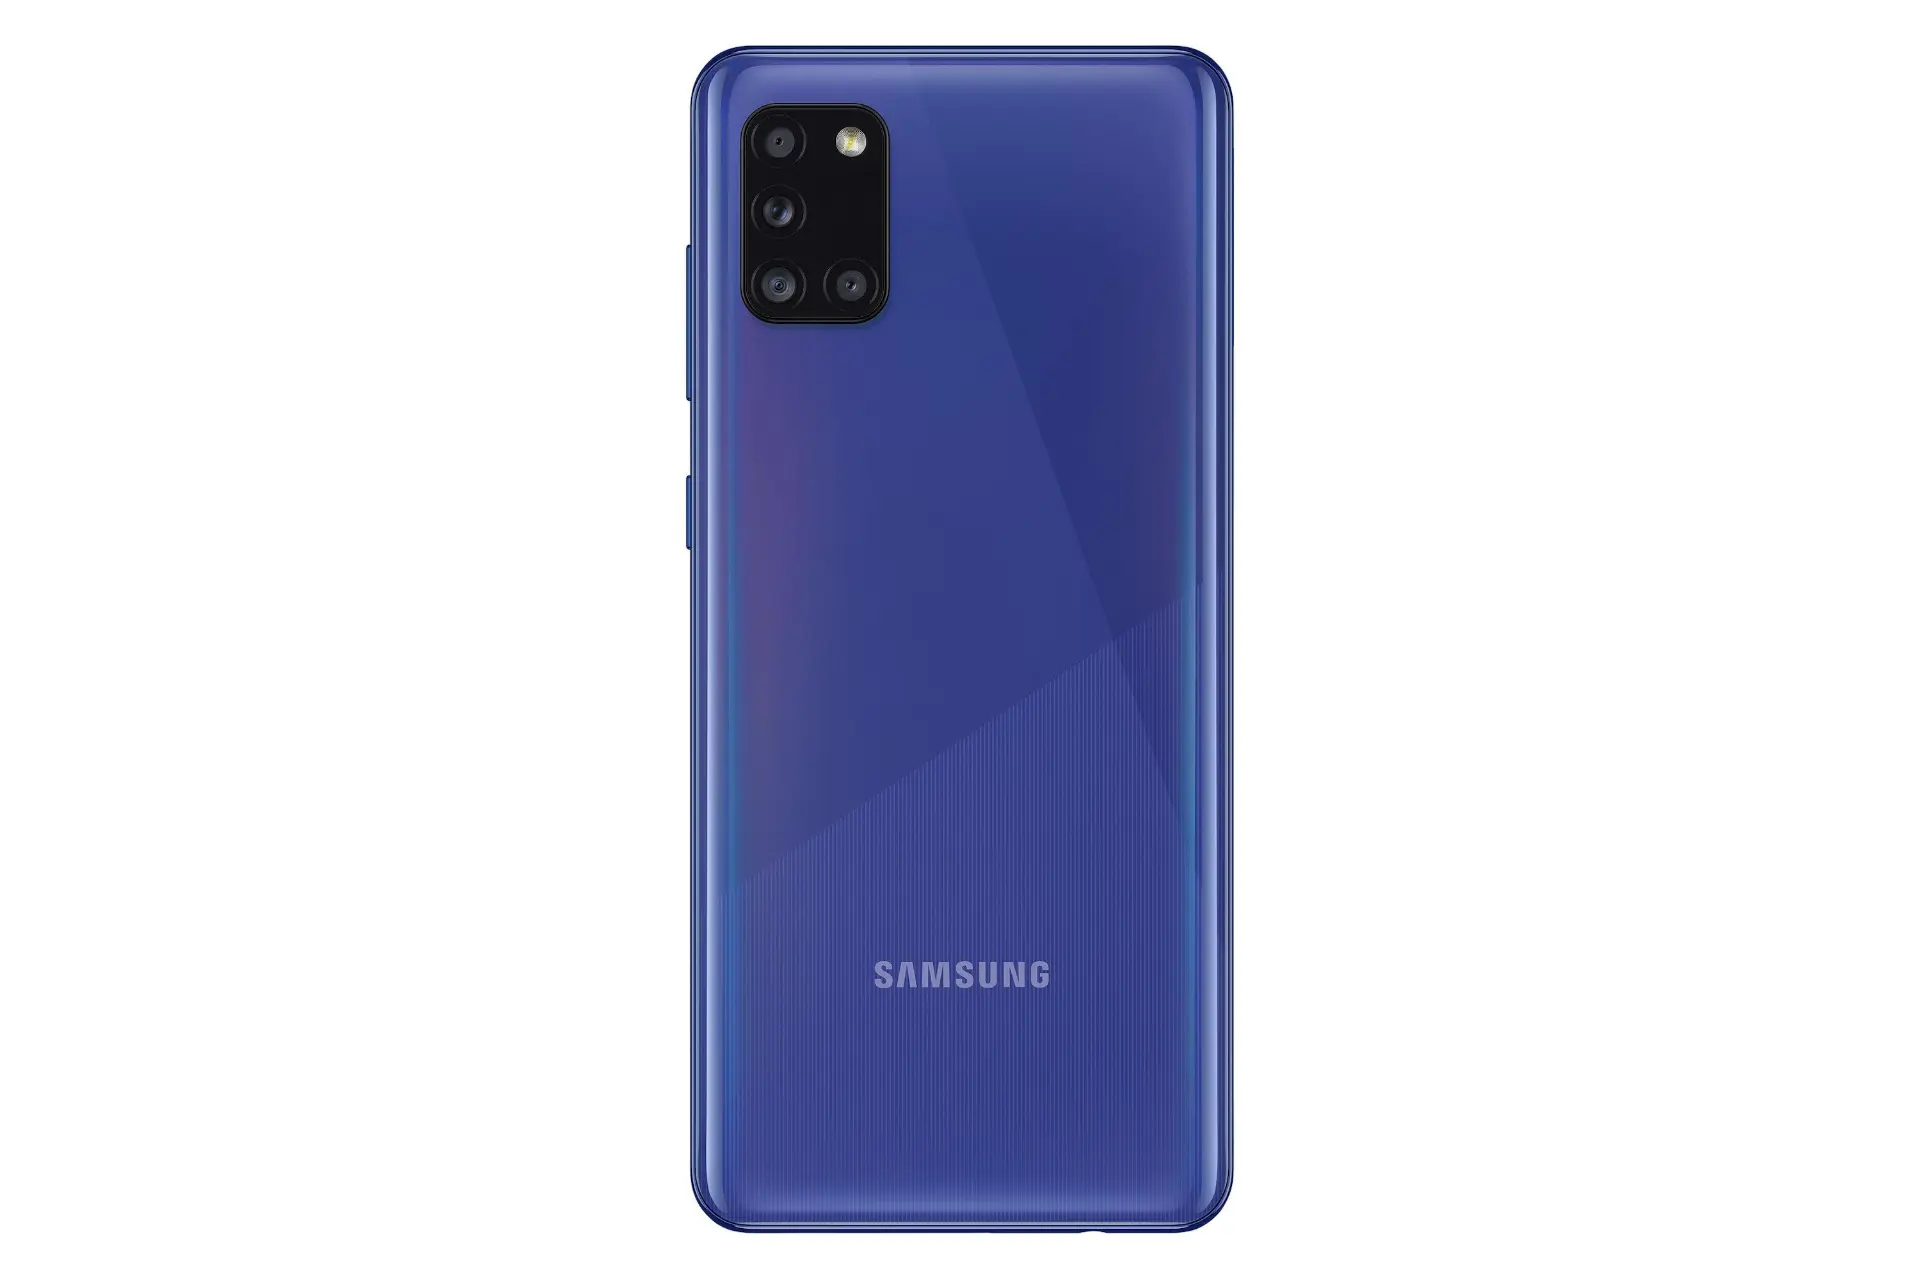 پنل پشت گوشی موبایل گلکسی A31 سامسونگ Samsung Galaxy A31 آبی